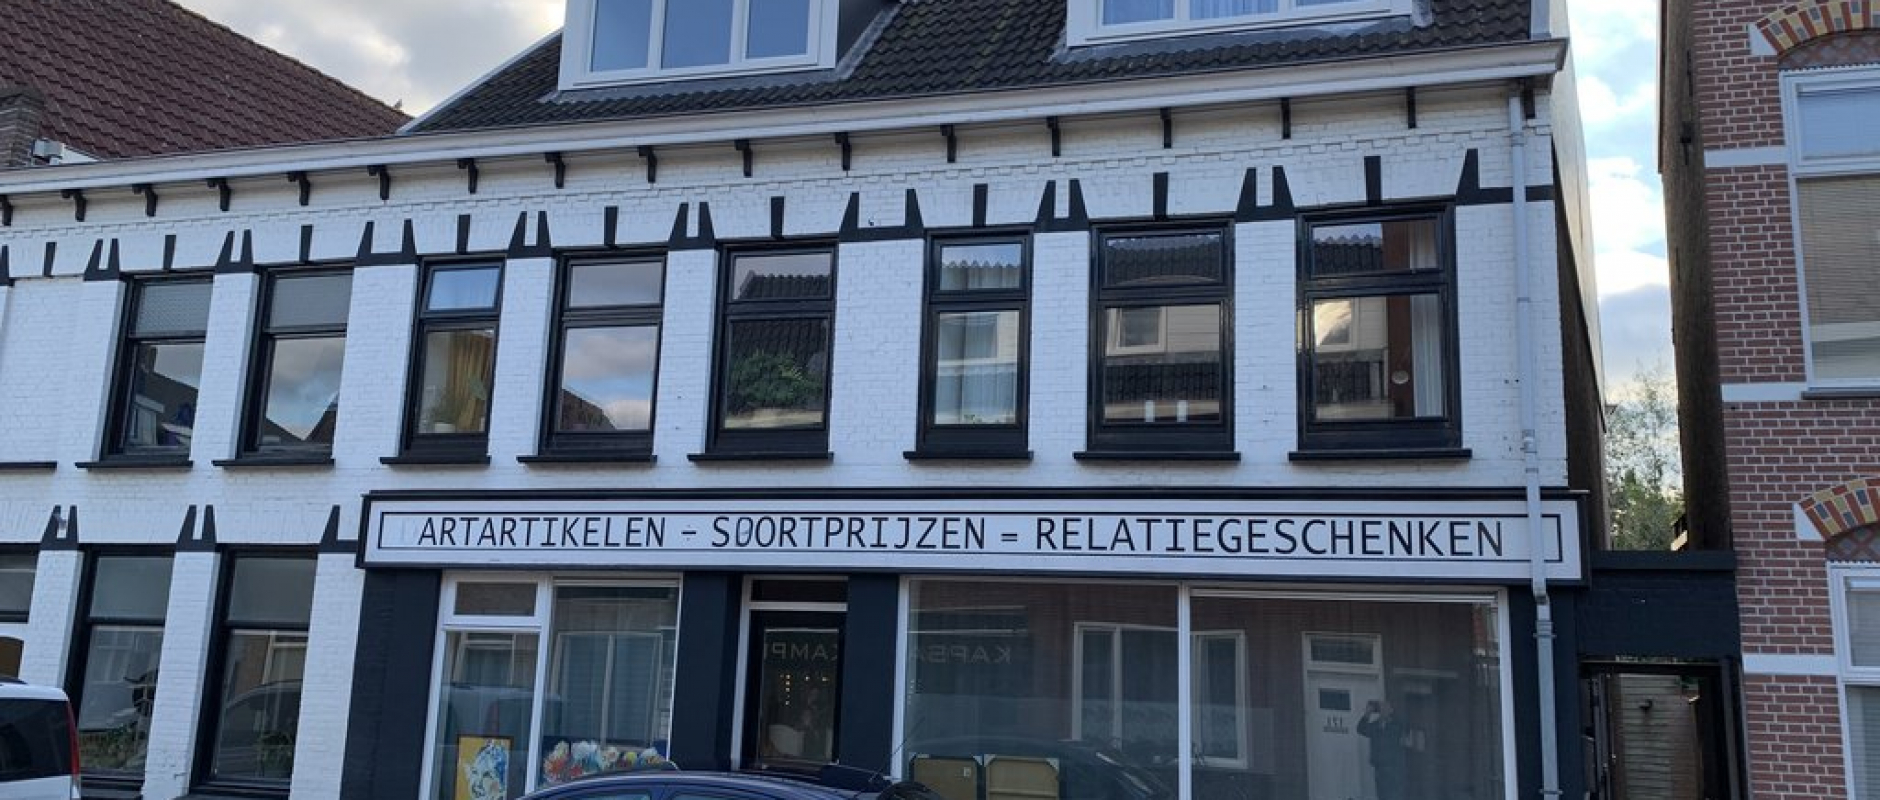 Woning te koop aan de Assendorperstraat 194C te Zwolle